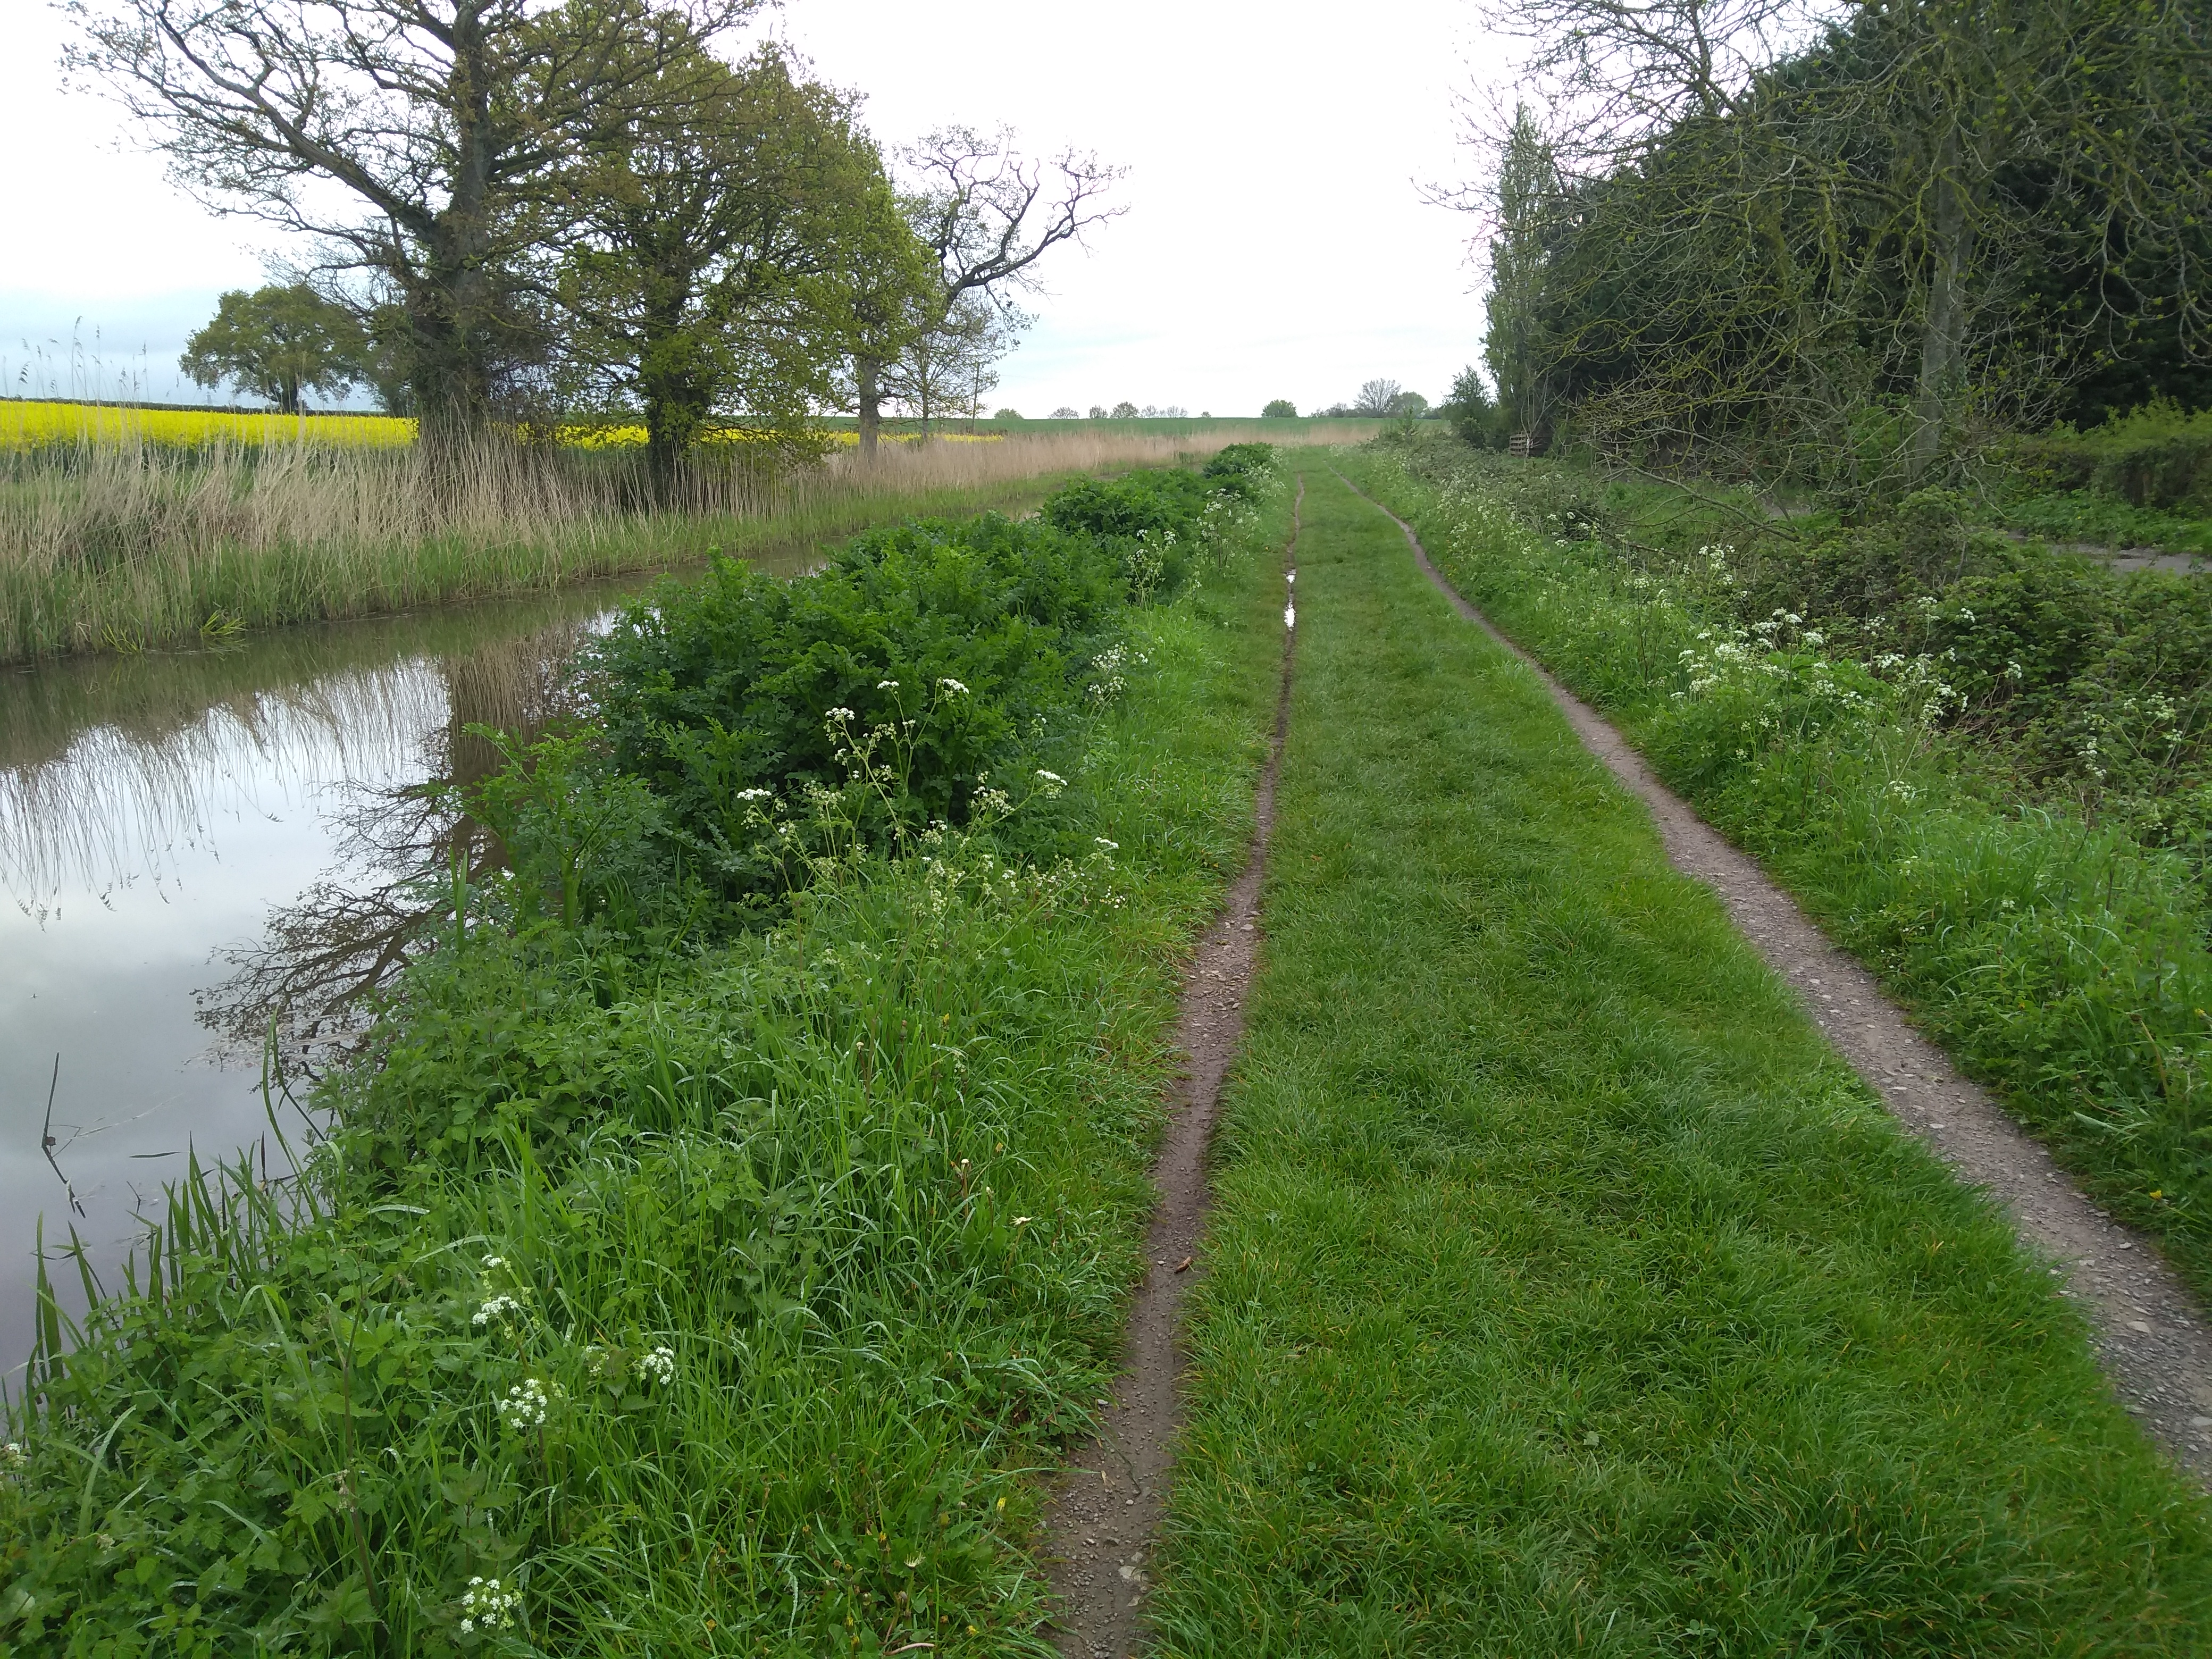 Rut along canal path